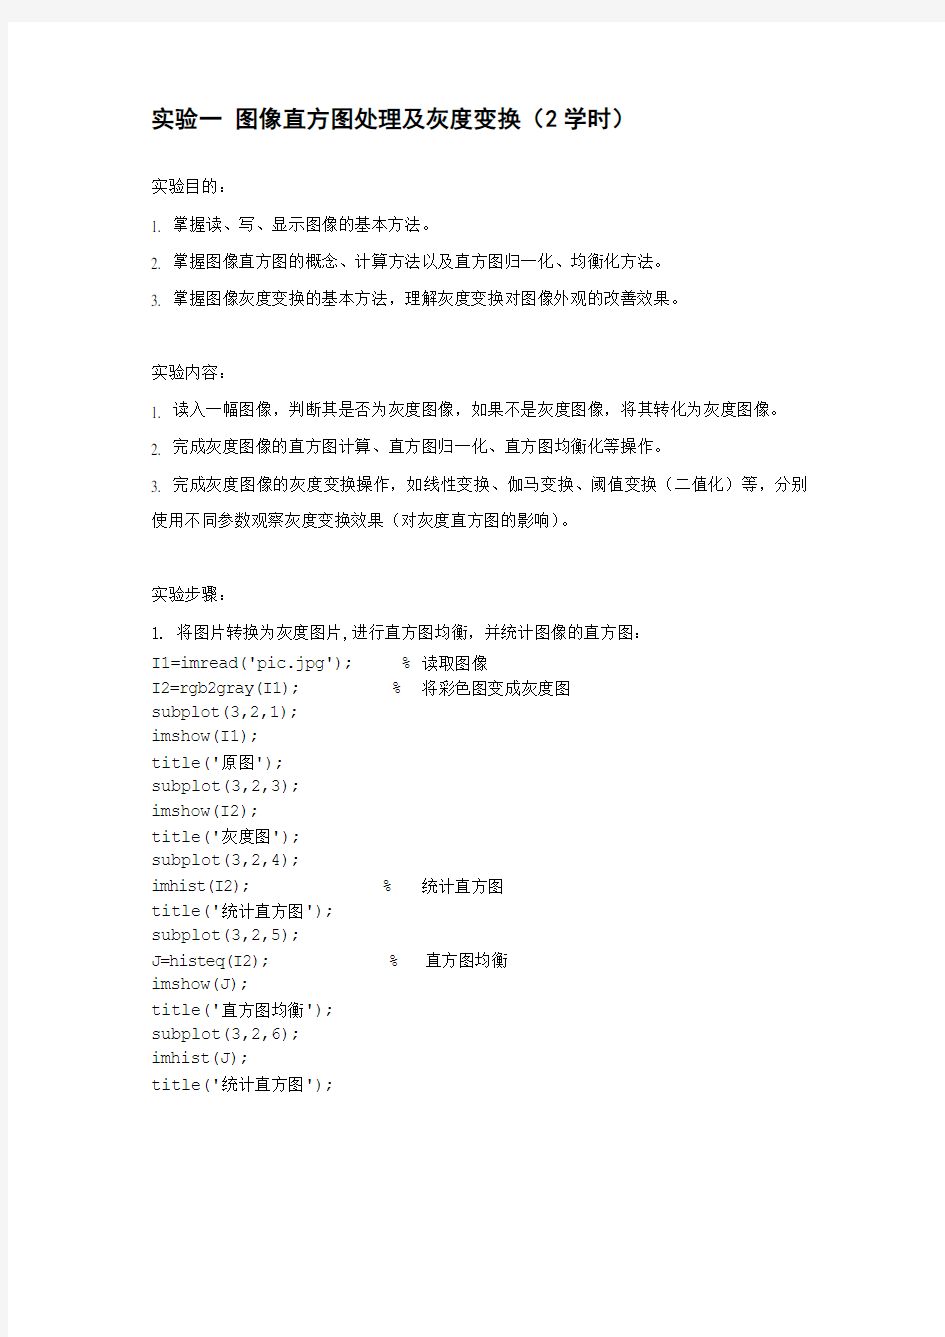 武汉科技大学 数字图像处理实验报告